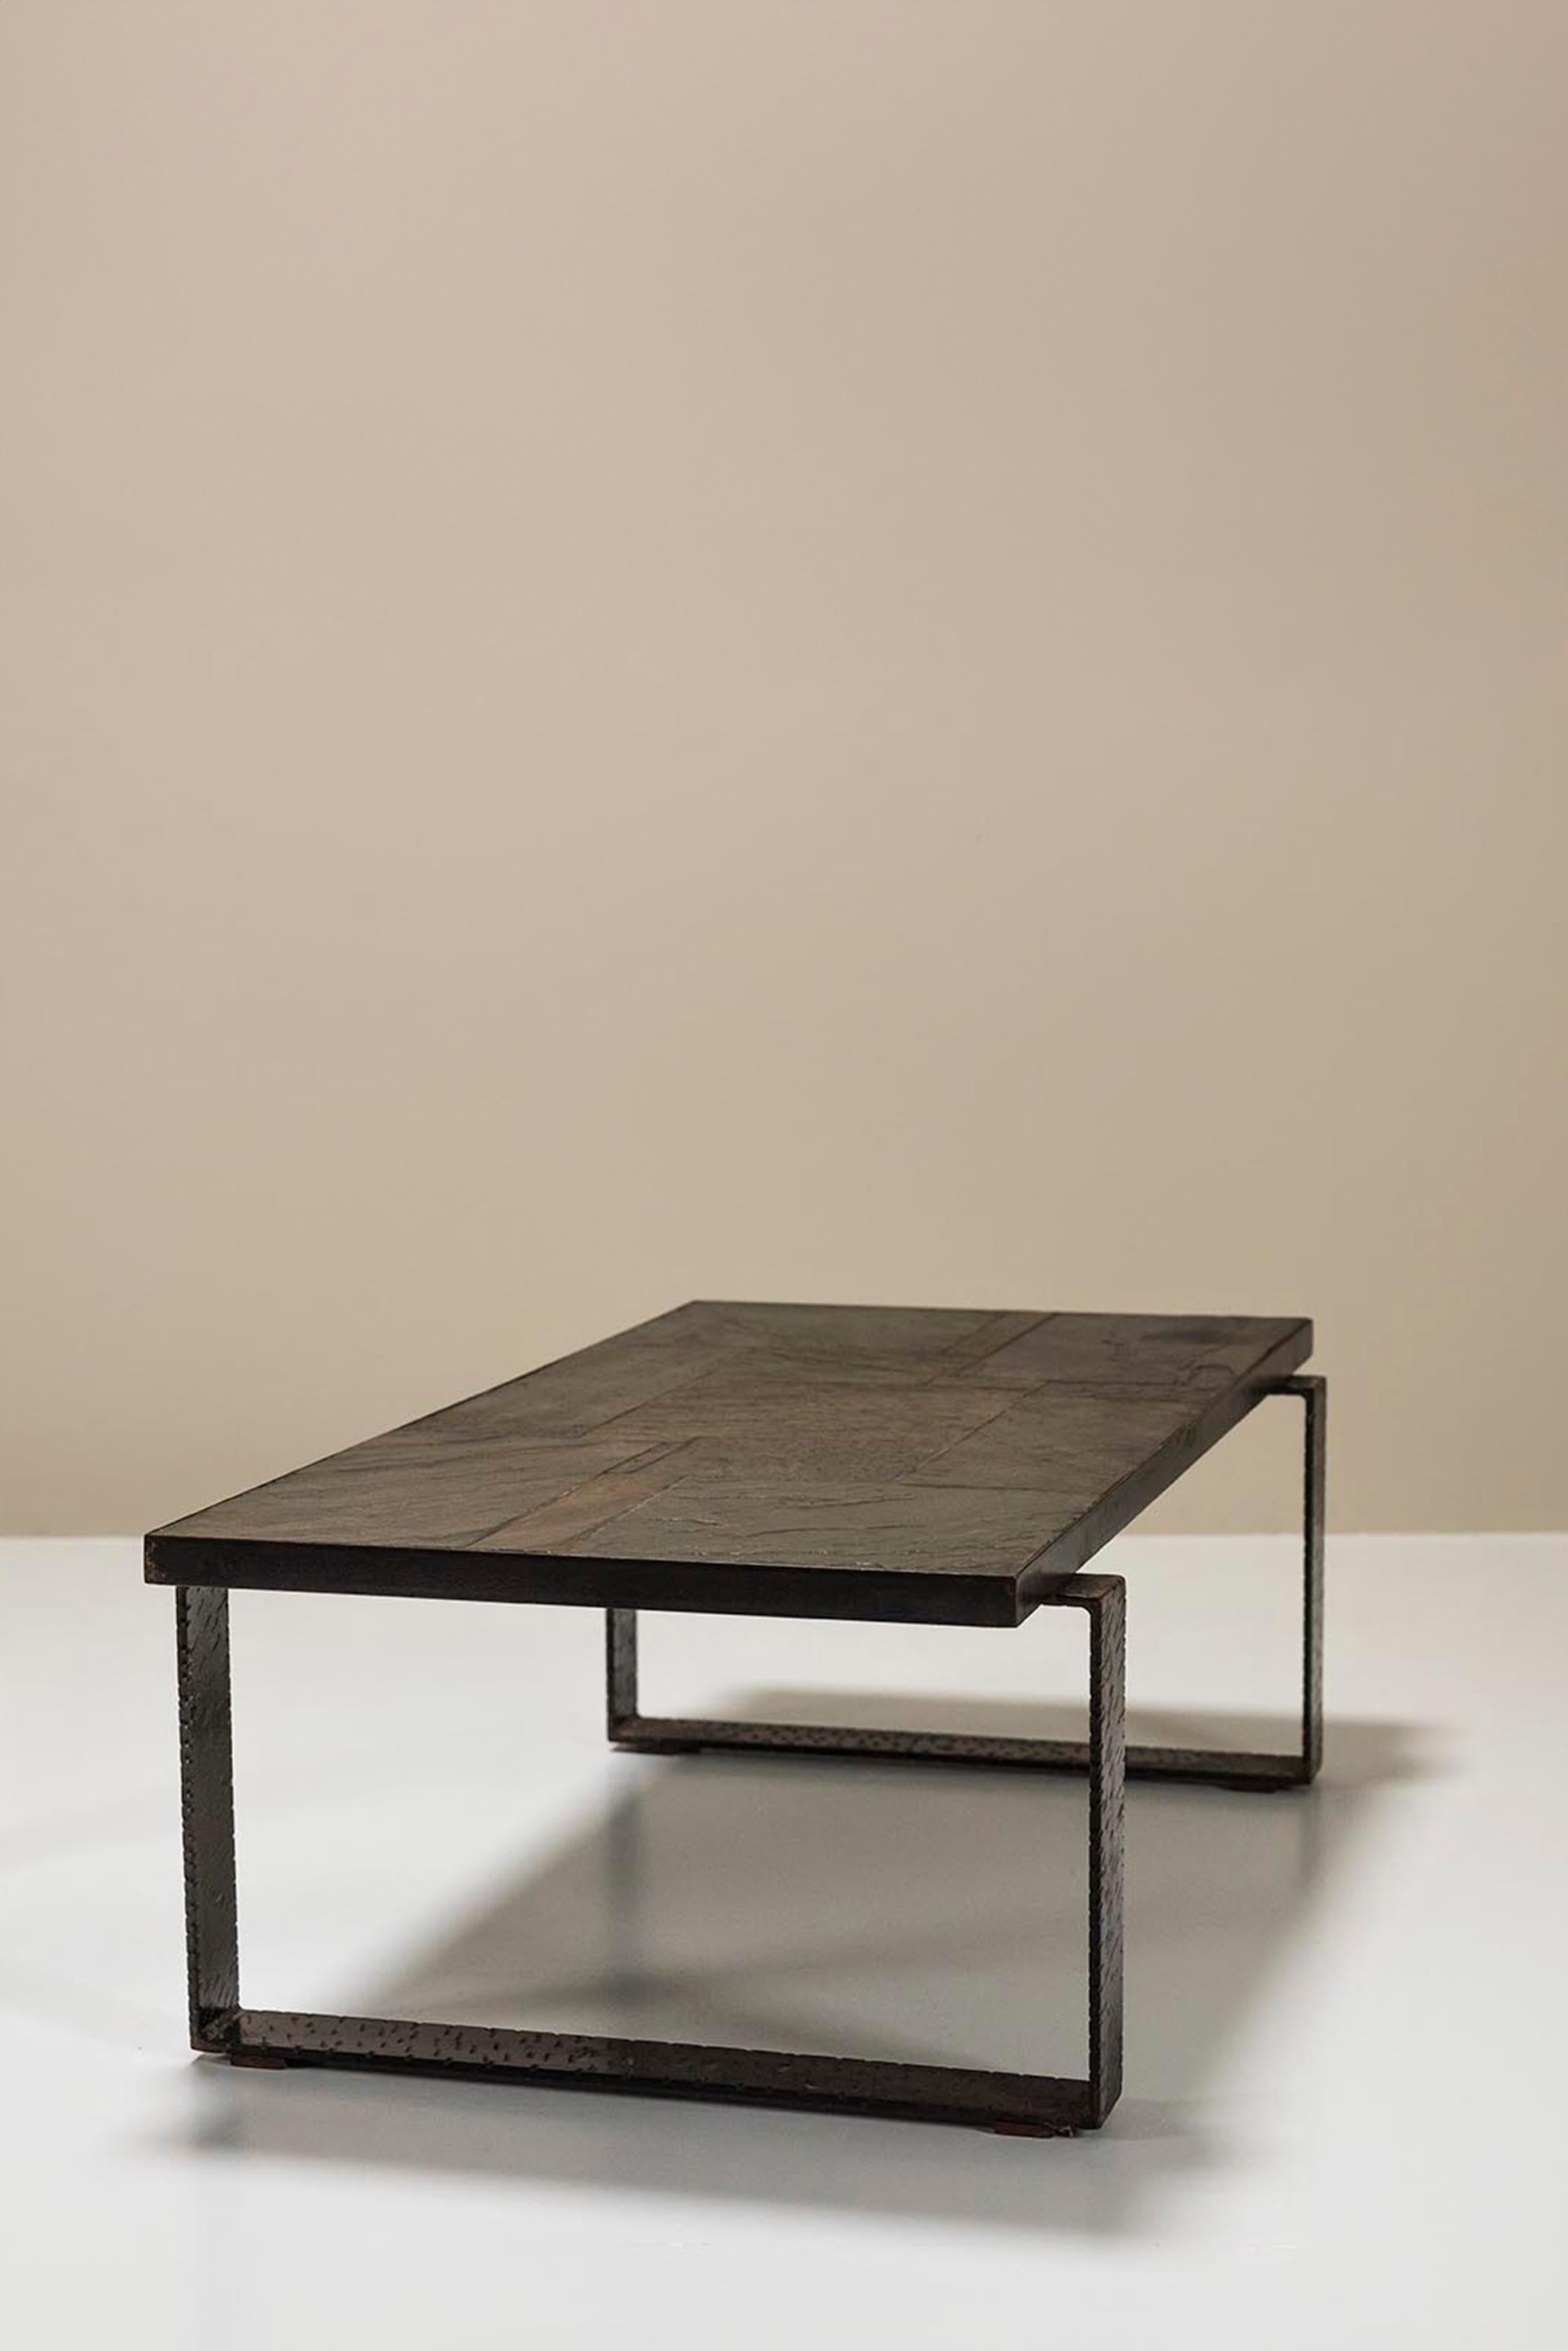 Table basse brutaliste de Paul Kingma en pierre et métal martelé. L'aspect brut de cette table est une marque de fabrique typique du sculpteur, mosaïste, peintre et dessinateur néerlandais Paul Kingma. Au début des années 1960, il a commencé à